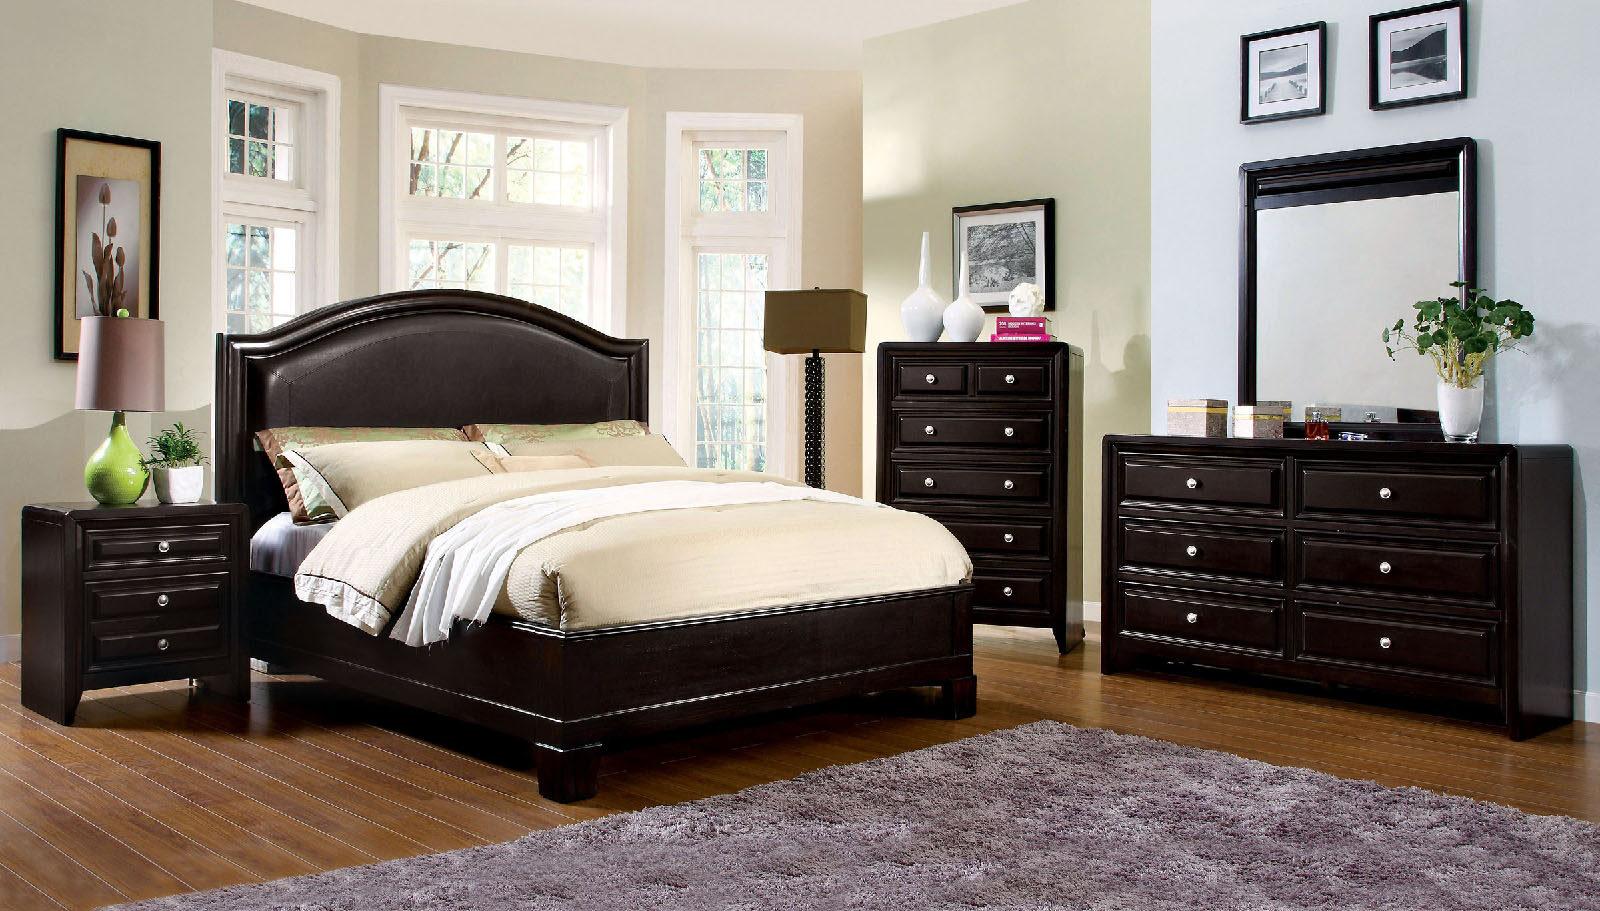 

    
Transitional Espresso Solid Wood King Bedroom Set 6pcs Furniture of America CM7058-EK Winsor
